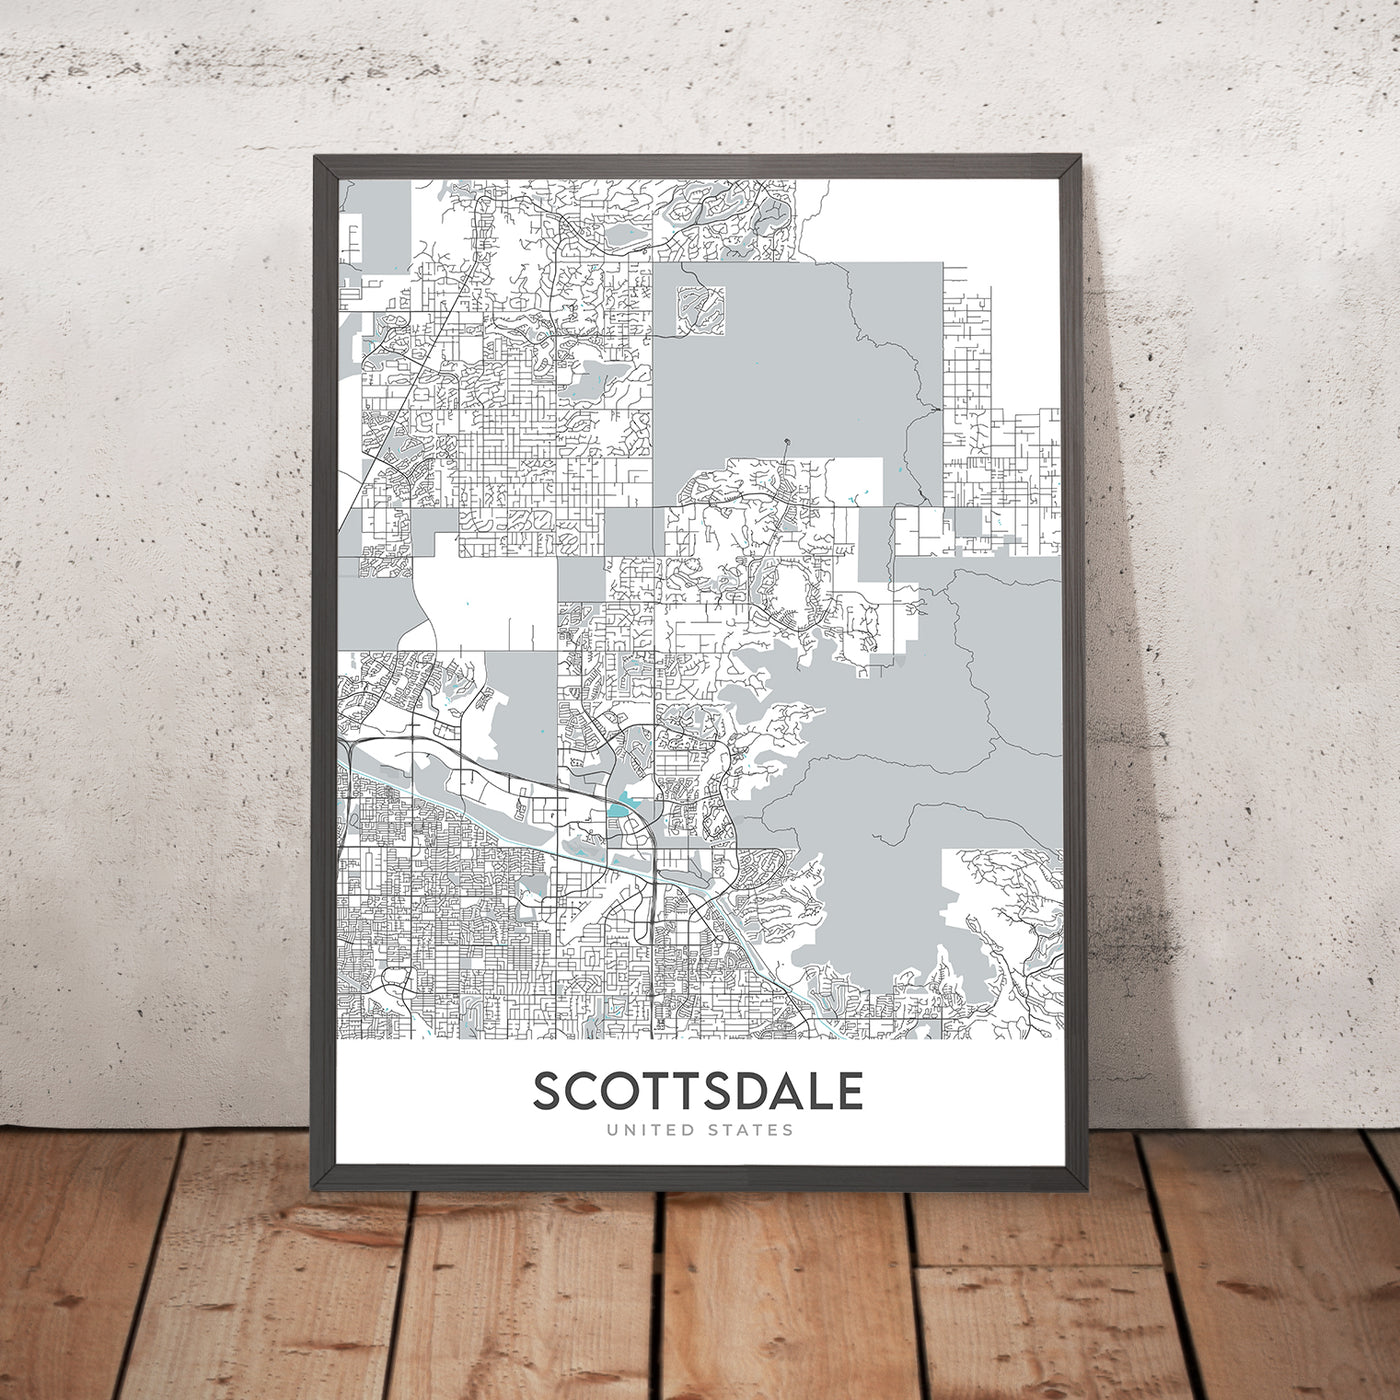 Moderner Stadtplan von Scottsdale, AZ: Innenstadt, Altstadt, Scottsdale Stadium, Scottsdale Fashion Square, Loop 101